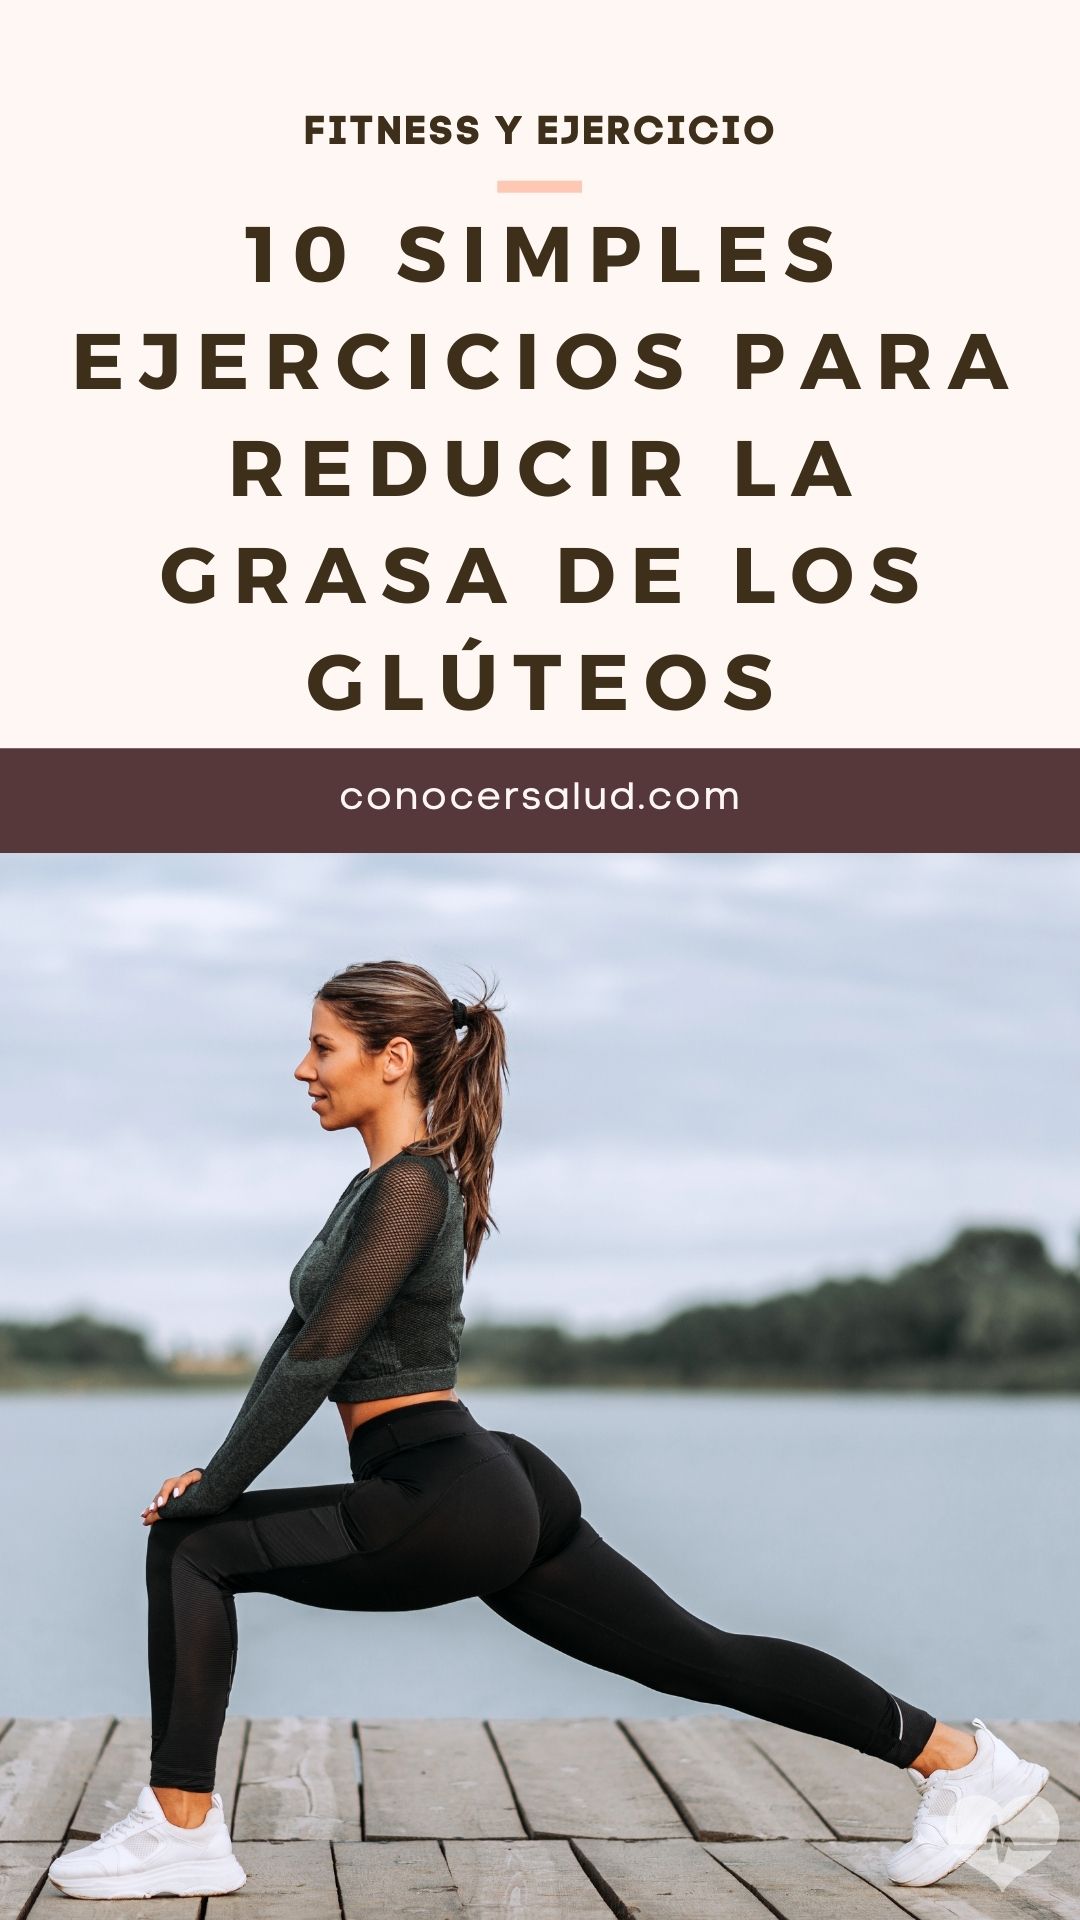 10 Simples ejercicios para reducir la grasa de los glúteos